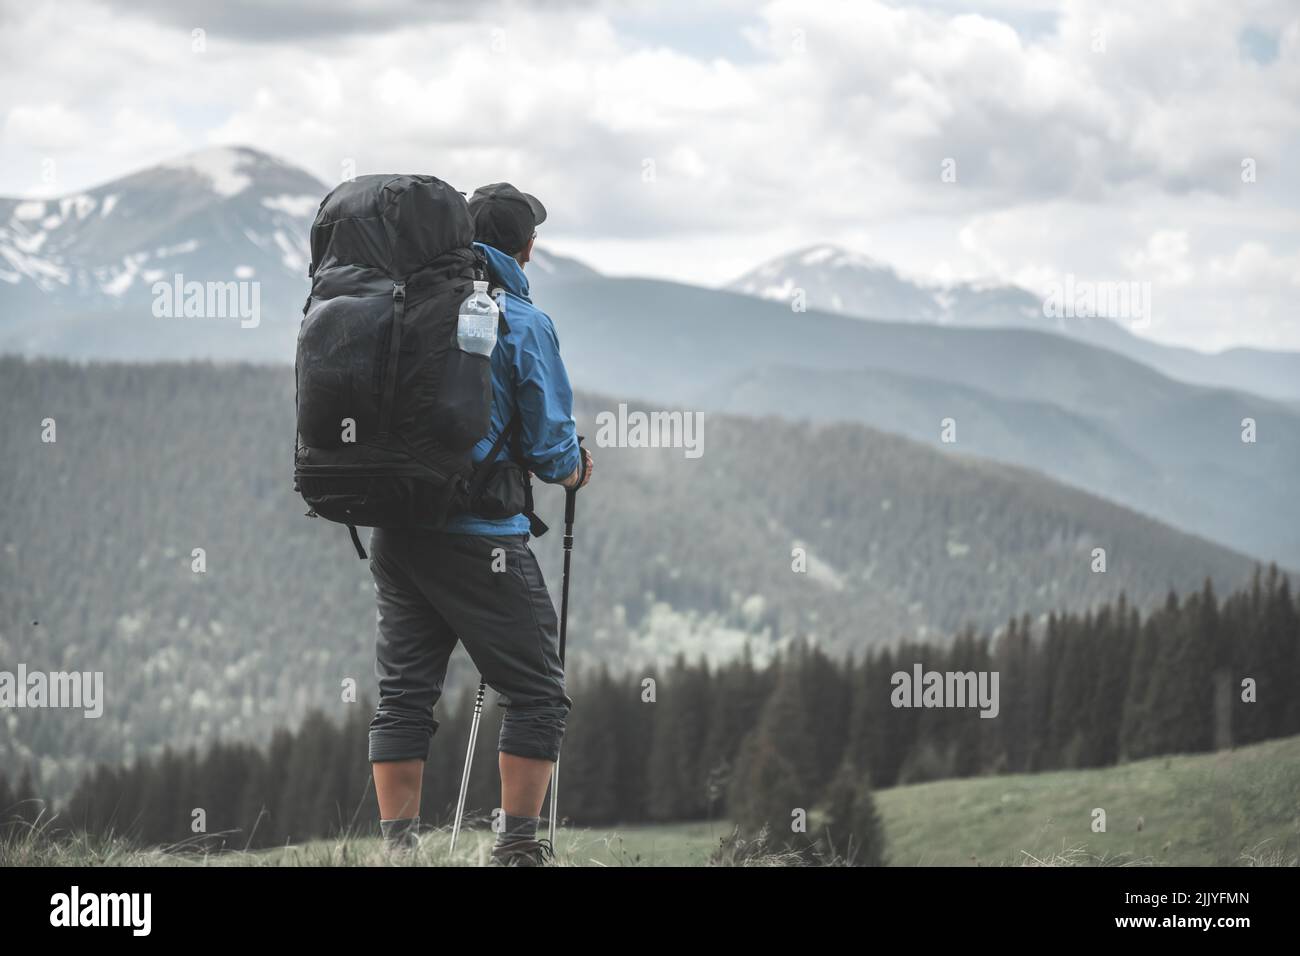 Un touriste avec randonnée à dos dans les montagnes de printemps. Les montagnes enneigées s'étendent en arrière-plan. Photographie de paysage Banque D'Images